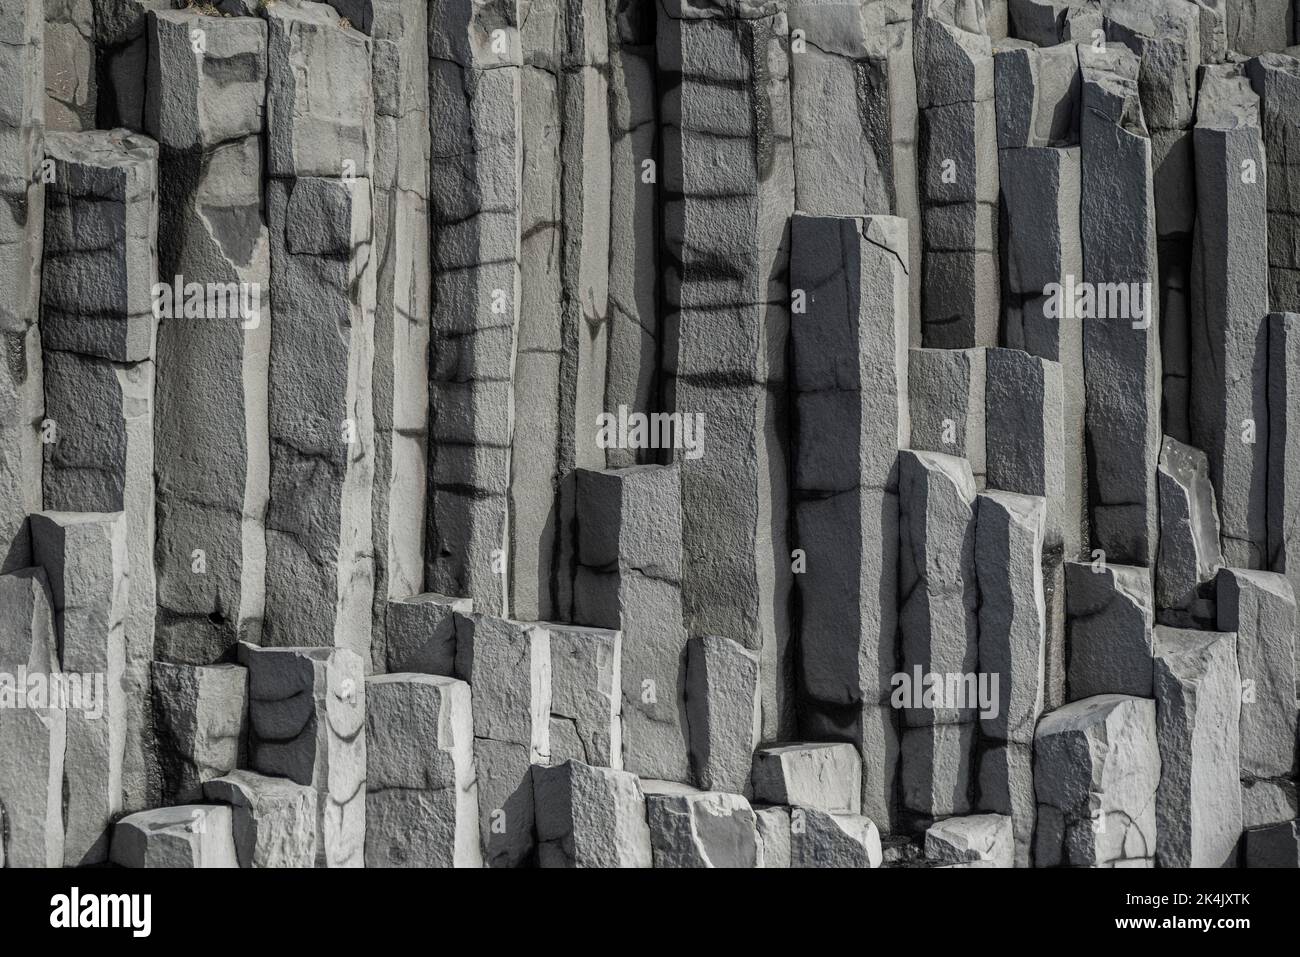 Vertikales Basaltsäulenhintergrundmuster, das die geometrischen sechseckigen Basaltfelsen des Reynisfjall-Berges, Reynisfjara-Strand, Island, zeigt Stockfoto